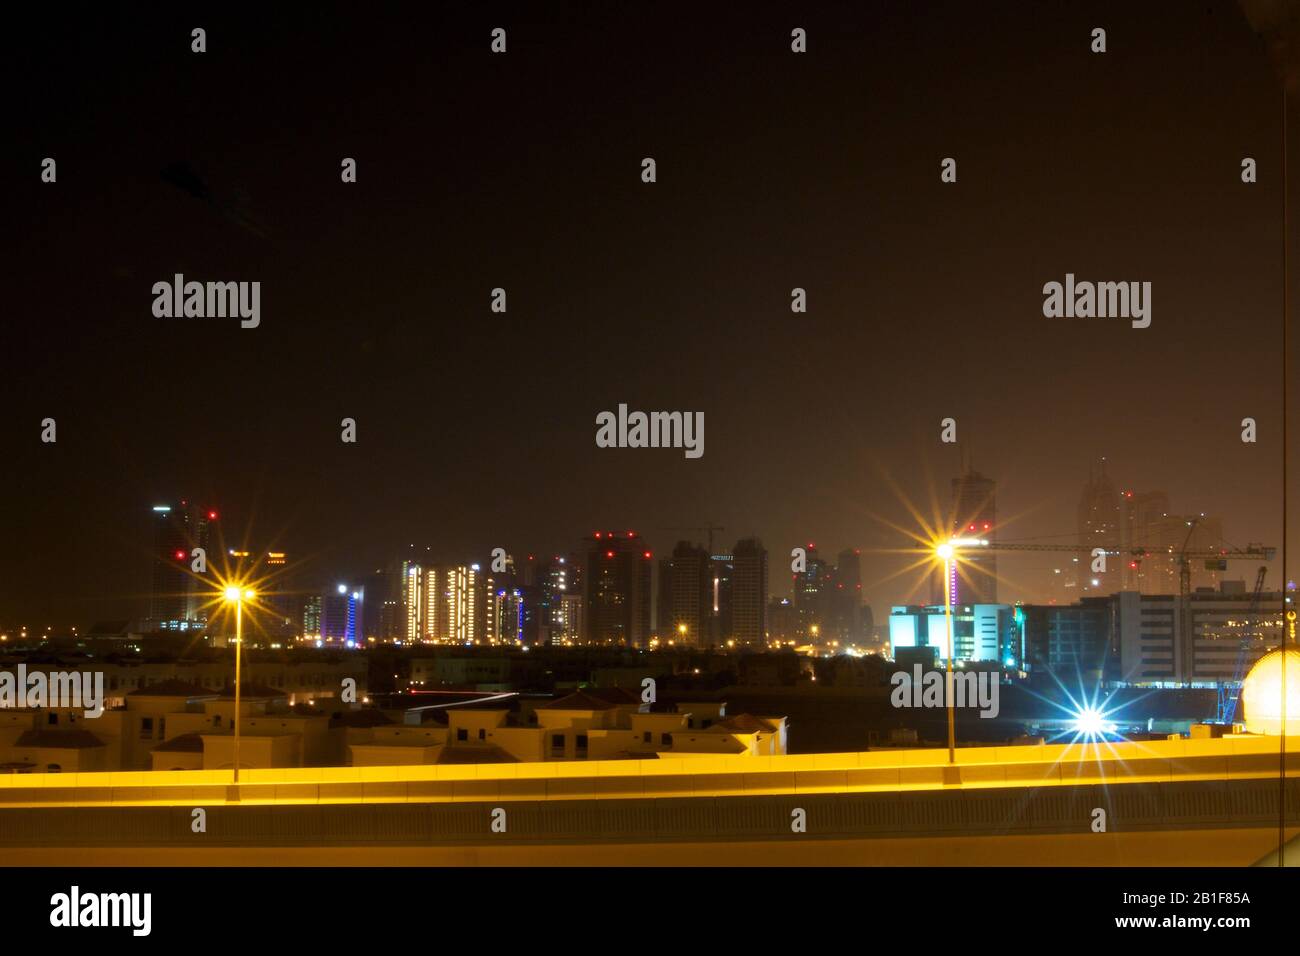 Dubai-Tecom by night seen from Al Barsha Stock Photo